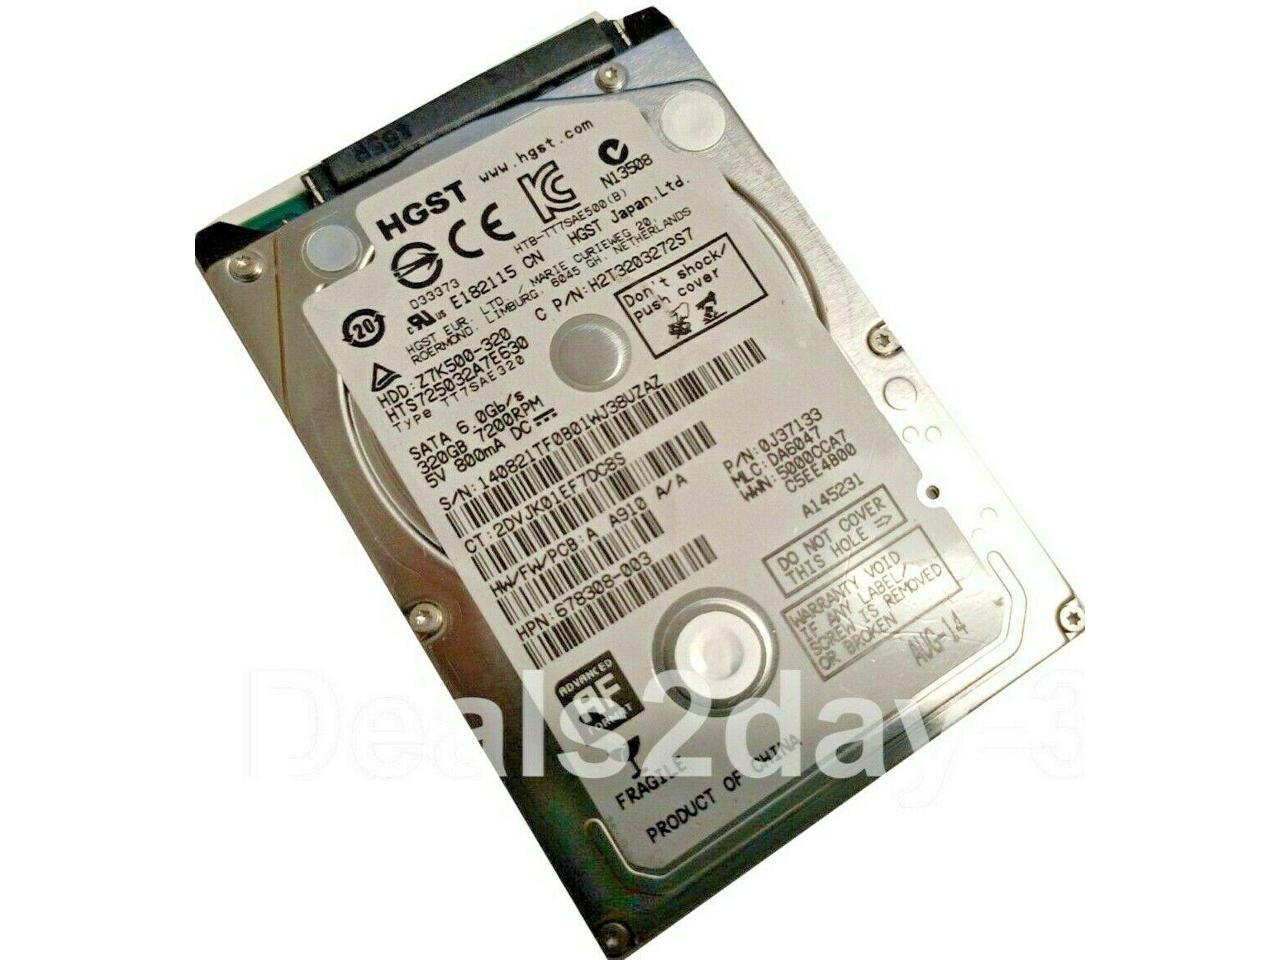 6.0Gp/s 7200RPM 320GB SATA 2.5 HDD Hitachi HTS725032A7E630 